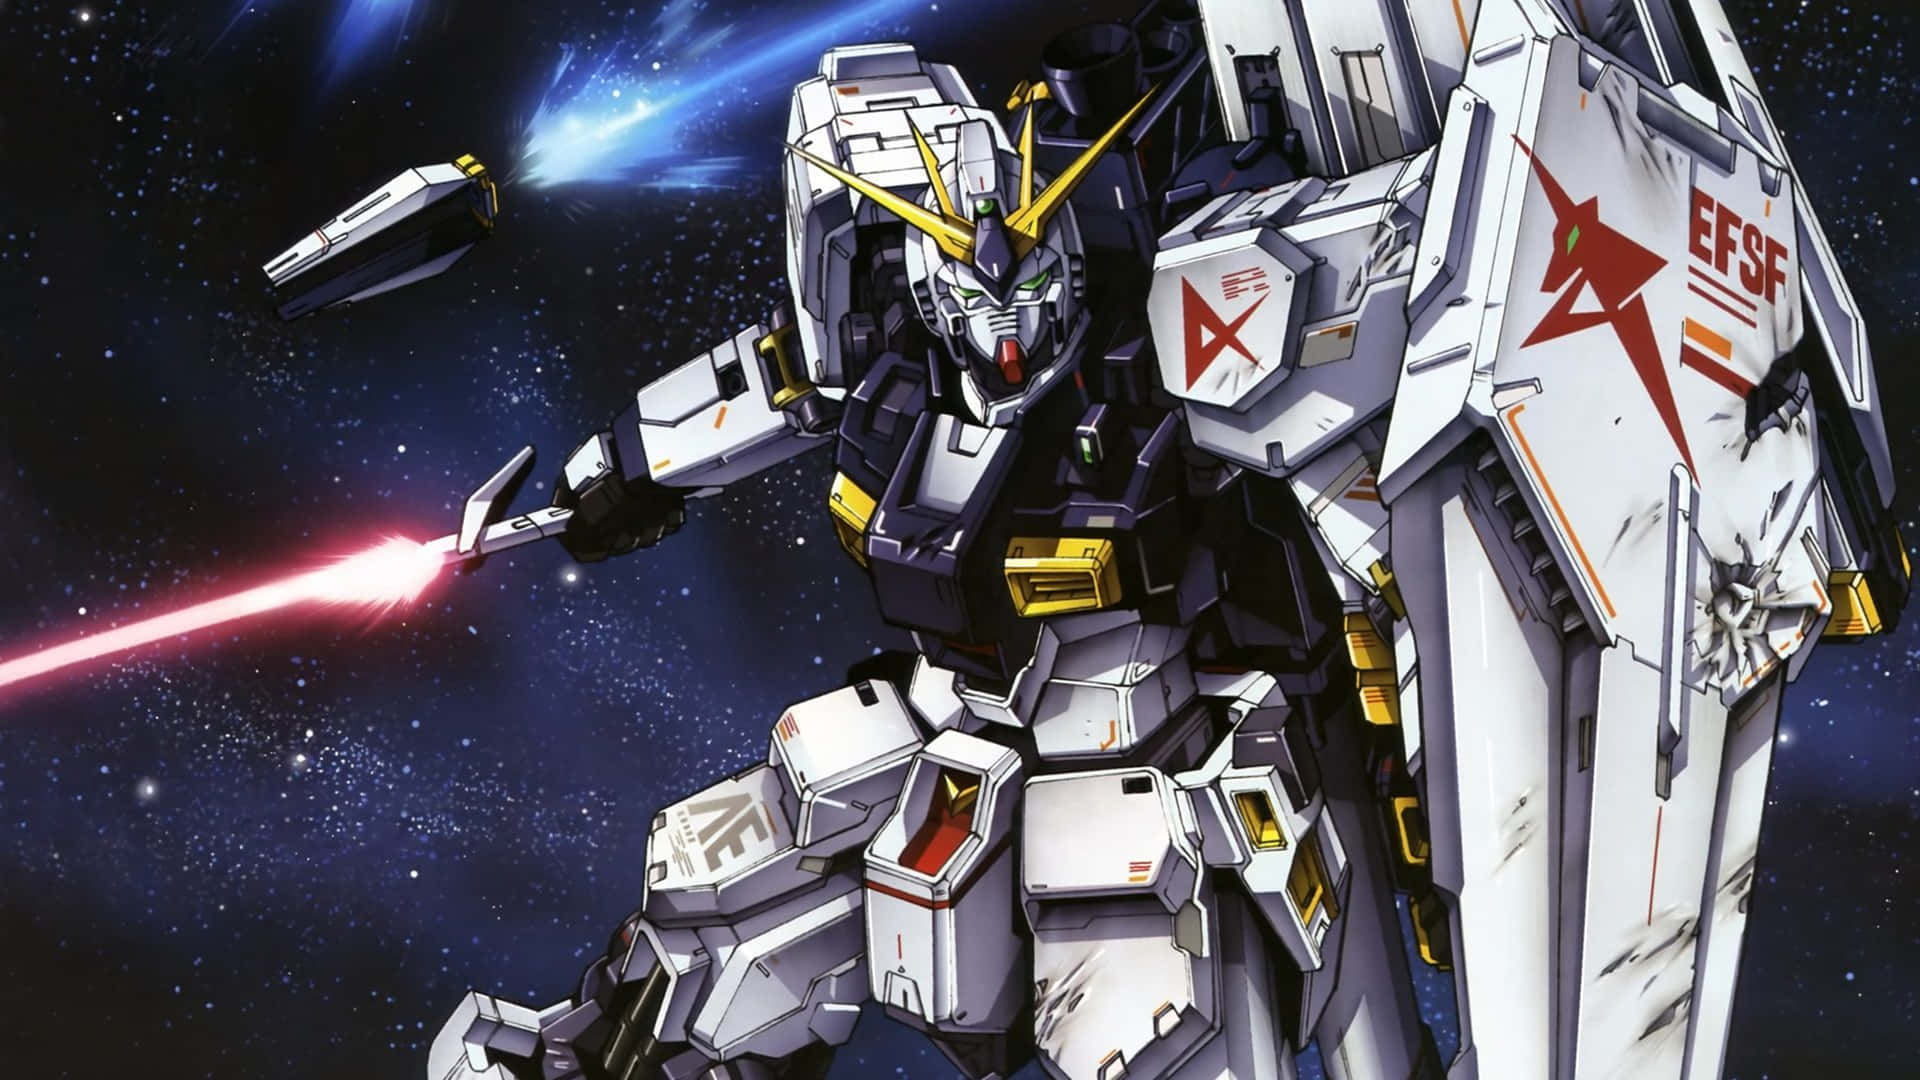 Derlegendäre Rx-78-2 Gundam In 4k Wallpaper